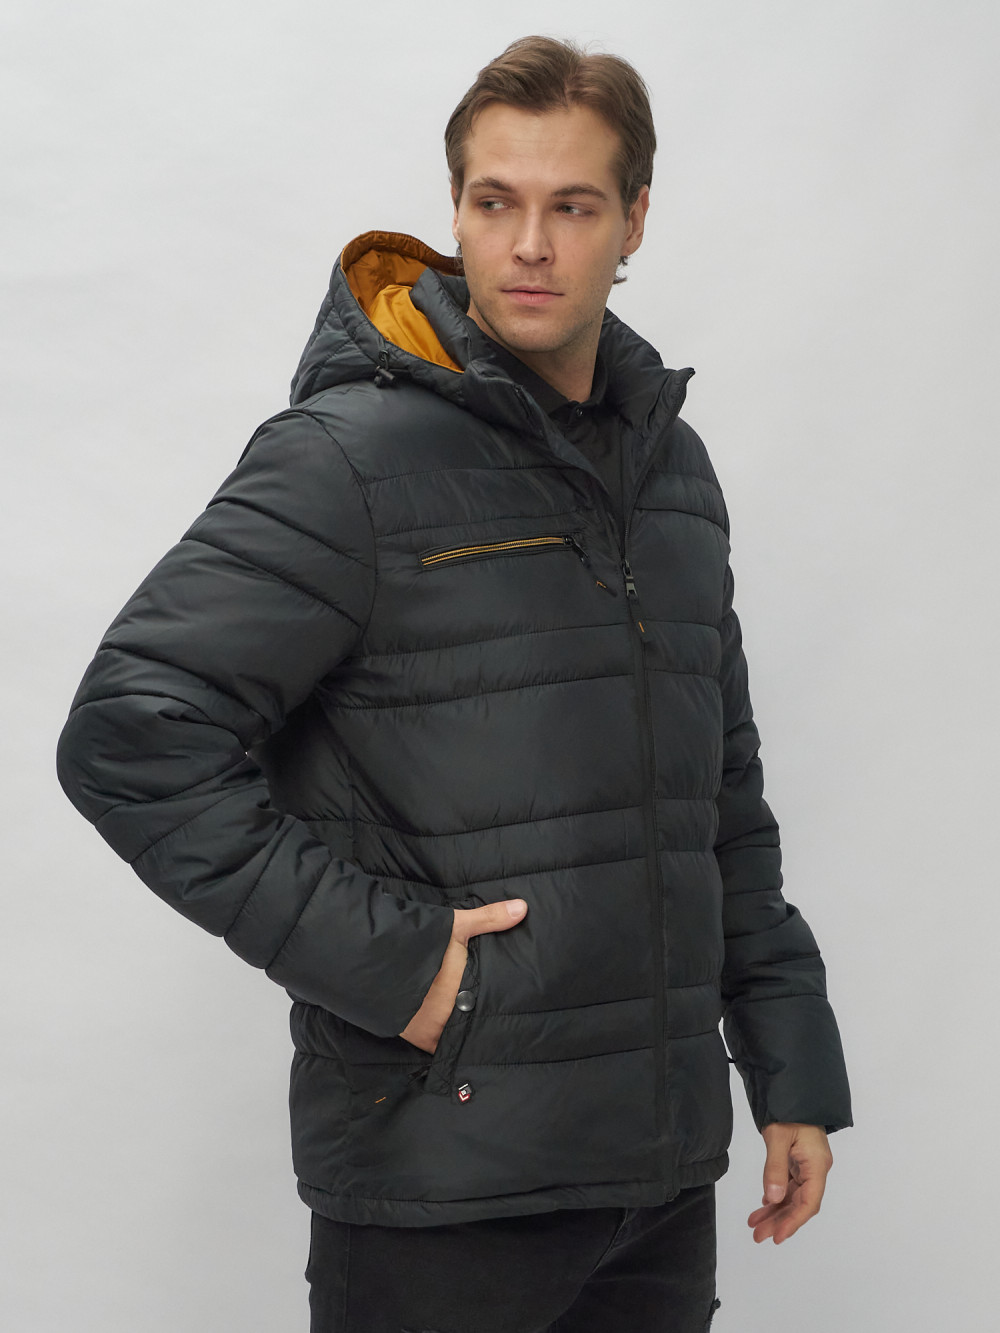 Купить куртку мужскую спортивную весеннюю оптом от производителя недорого в Москве 62175Ch 1